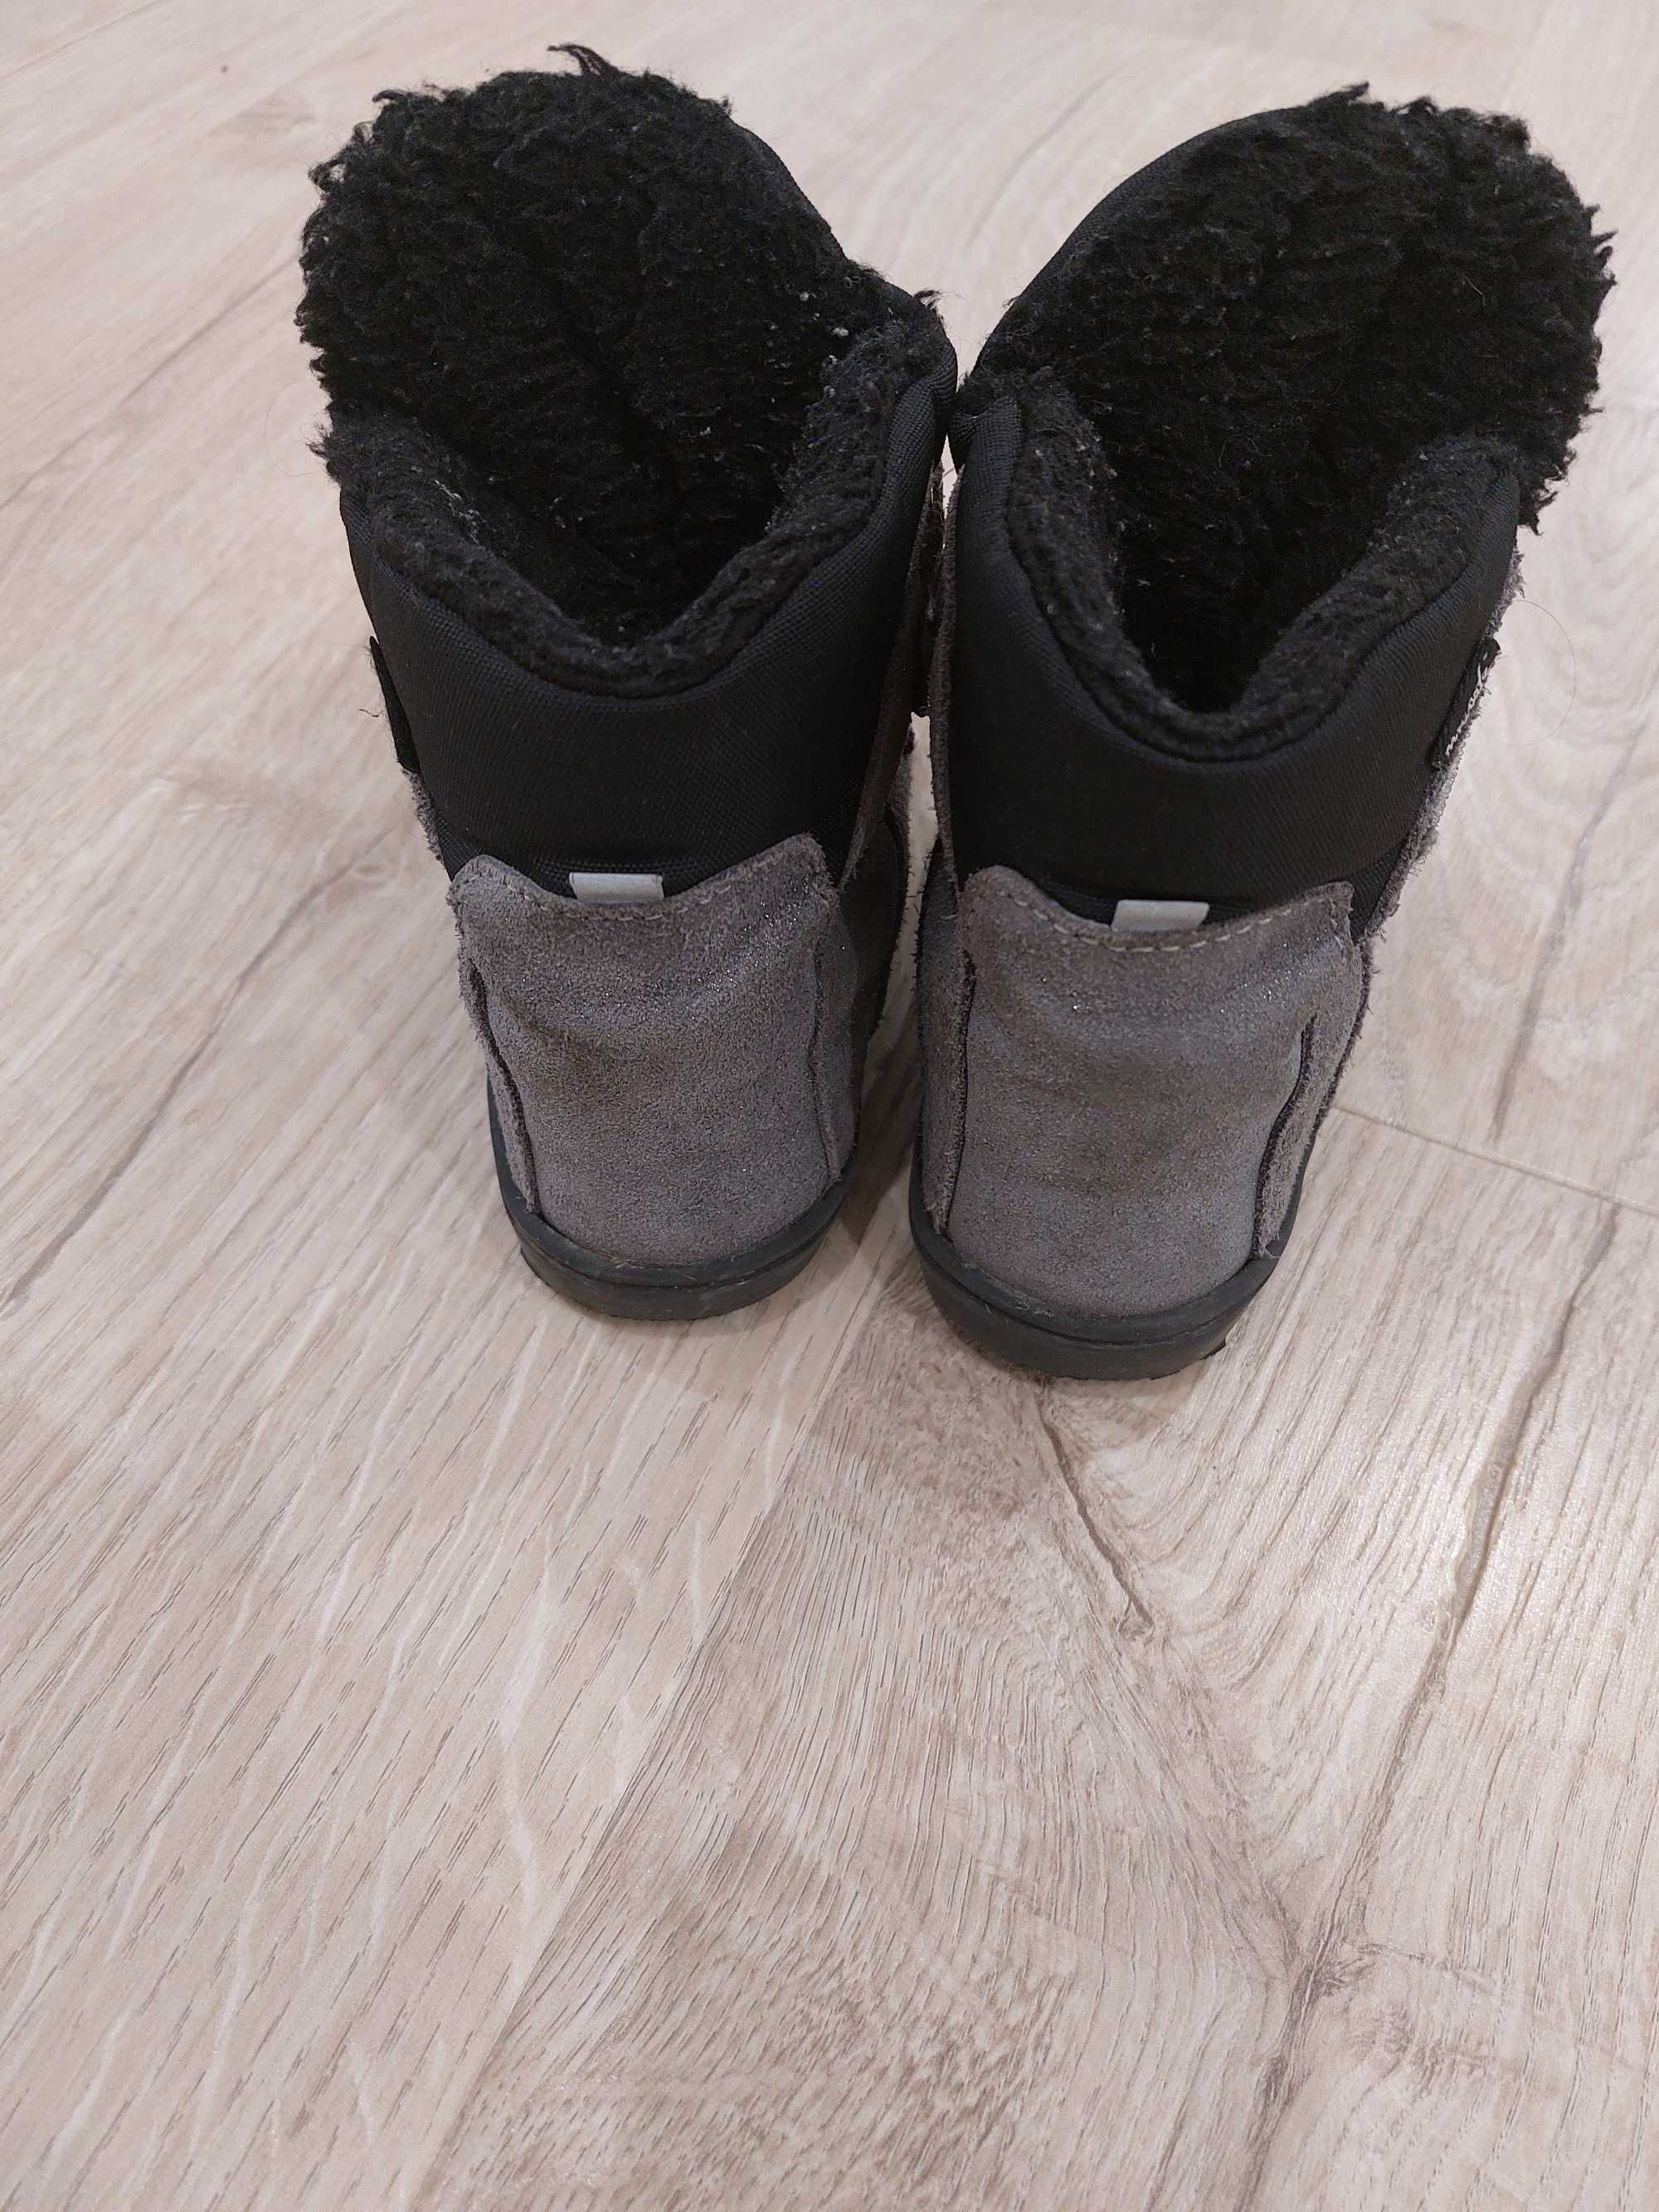 Buty zimowe Mrugała, śniegowce, roz.26